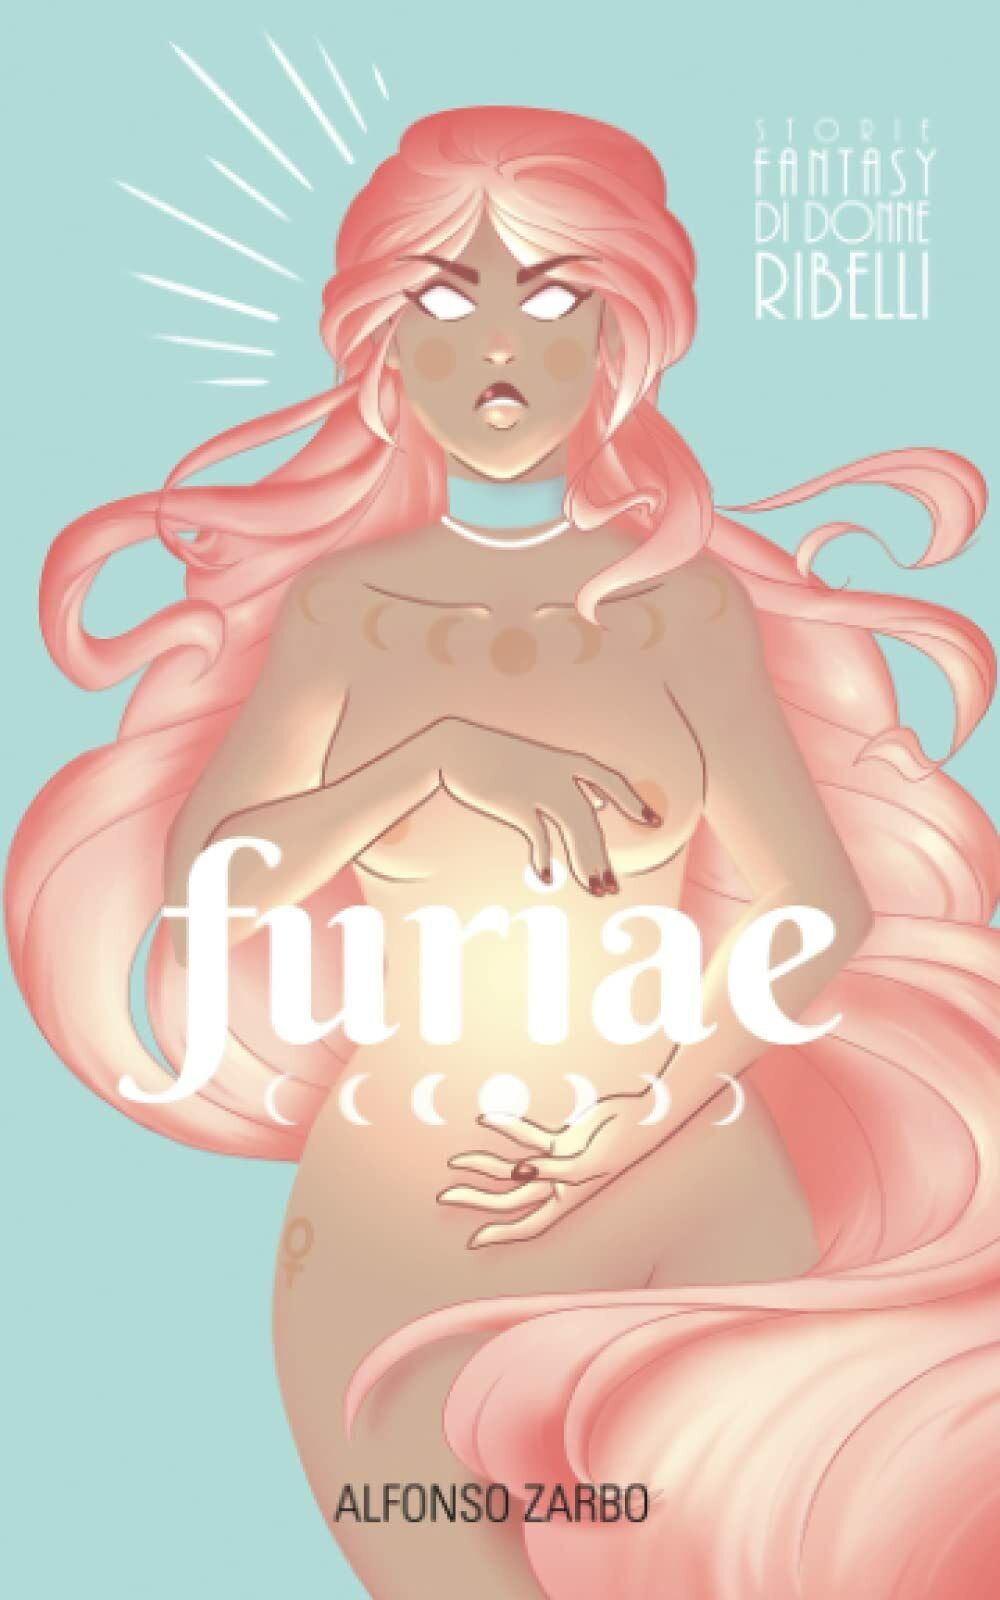 Furiae: Storie Fantasy di Donne Ribelli di Alfonso Zarbo,  2021,  Indipendently 